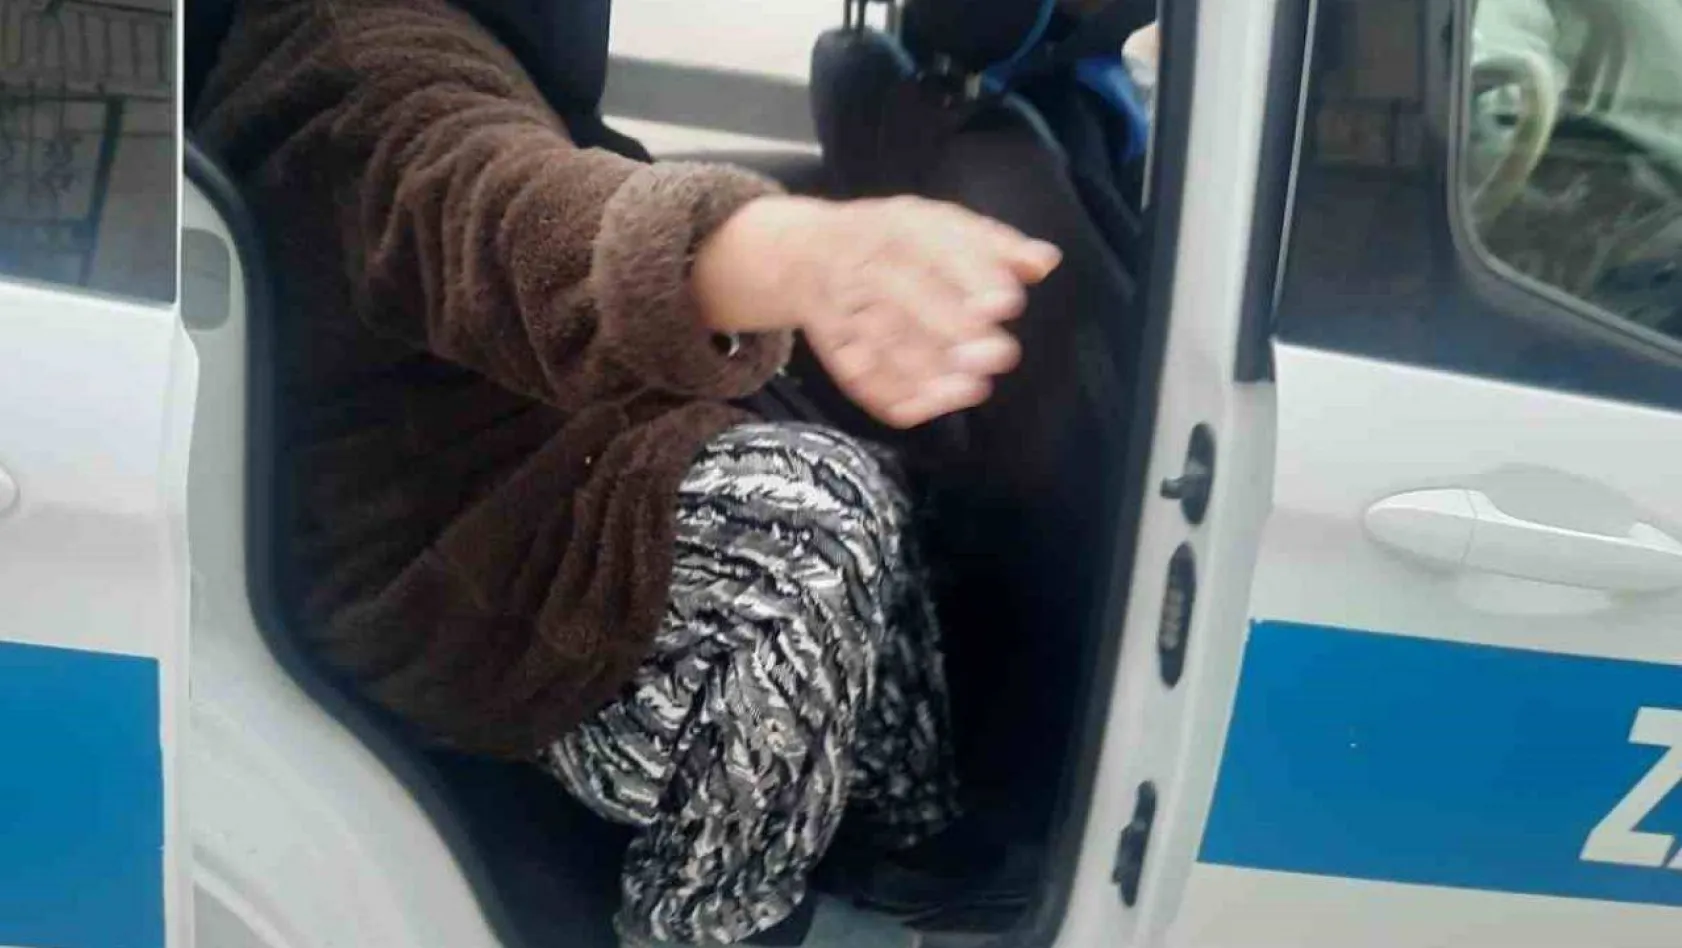 Bilecik'te zabıta ile çorap satan kadın arasında gülümseten diyalog